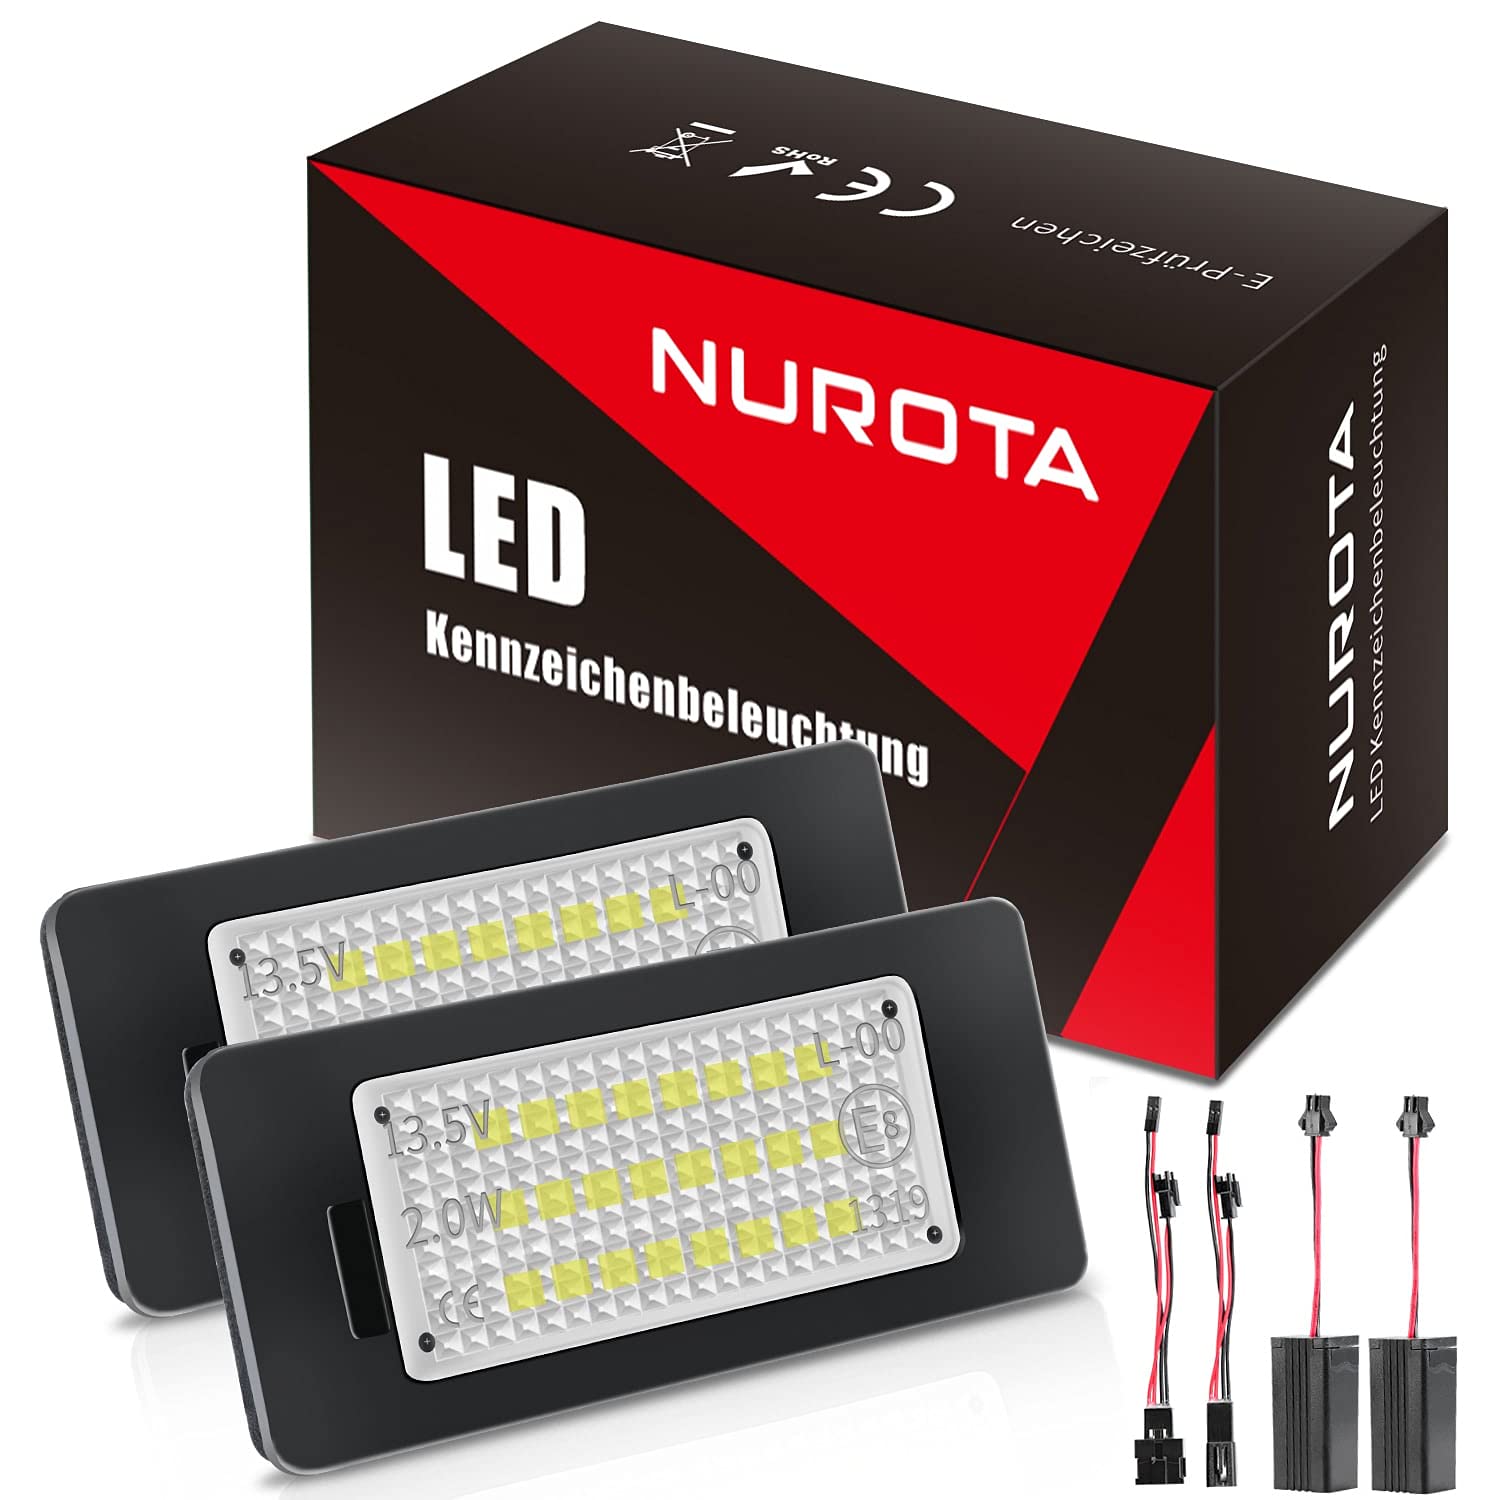 NUROTA LED Kennzeichenbeleuchtung Canbus Fehlerfrei Weißes Licht kompatibel mit Audi A4 B8, A5 8T, Q5, TT 8J, kompatibel mit Passat B6 CC, Skoda Fabia 2 3 von NUROTA